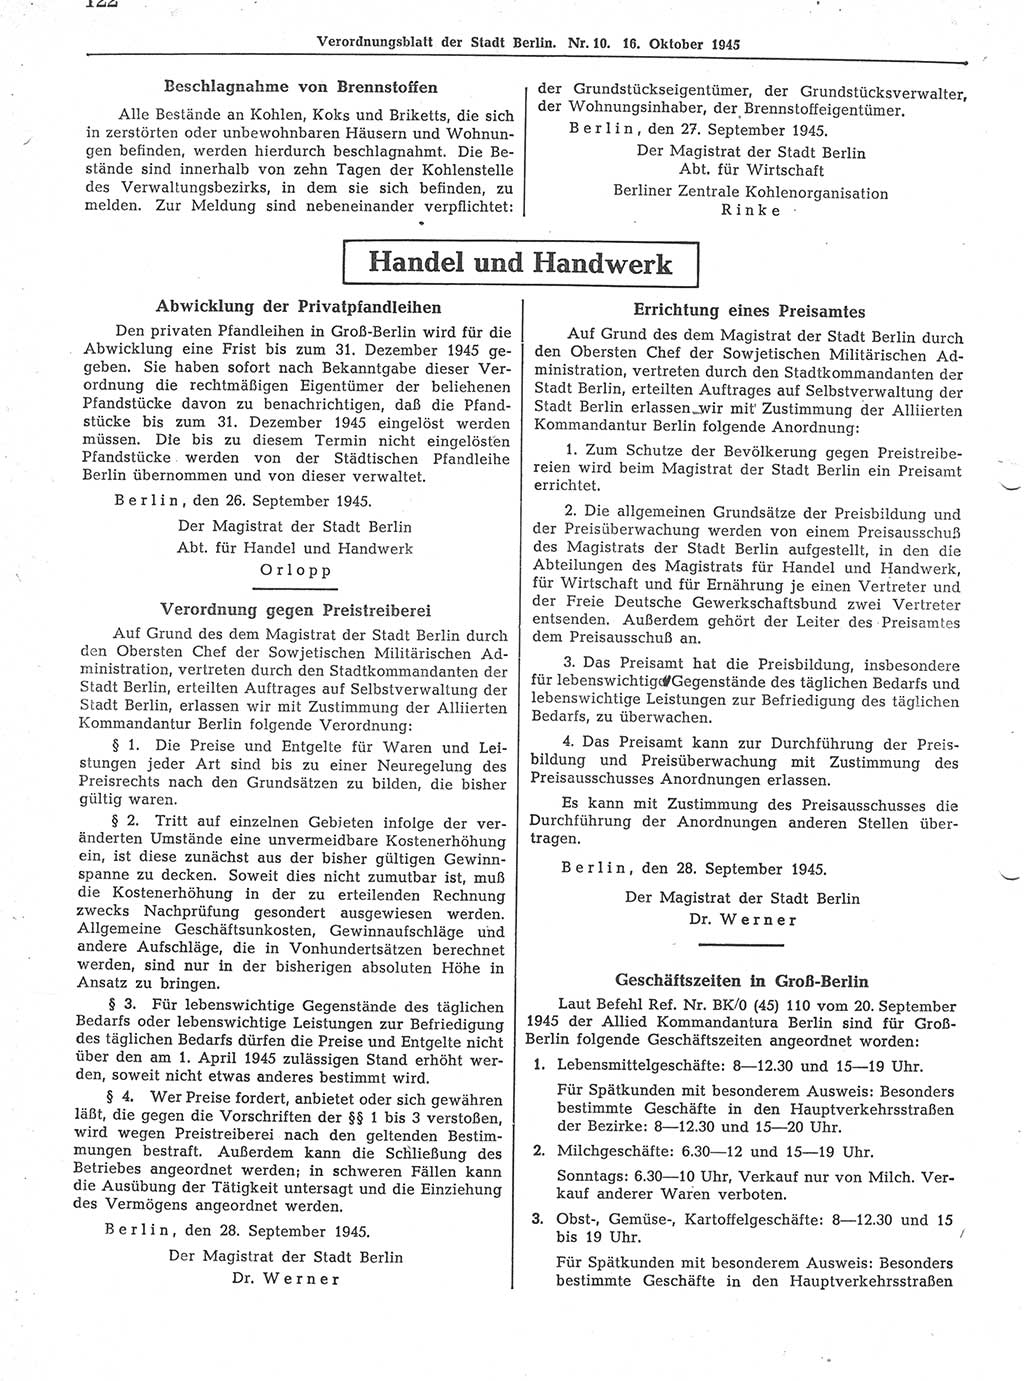 Verordnungsblatt (VOBl.) der Stadt Berlin 1945, Seite 122 (VOBl. Bln. 1945, S. 122)